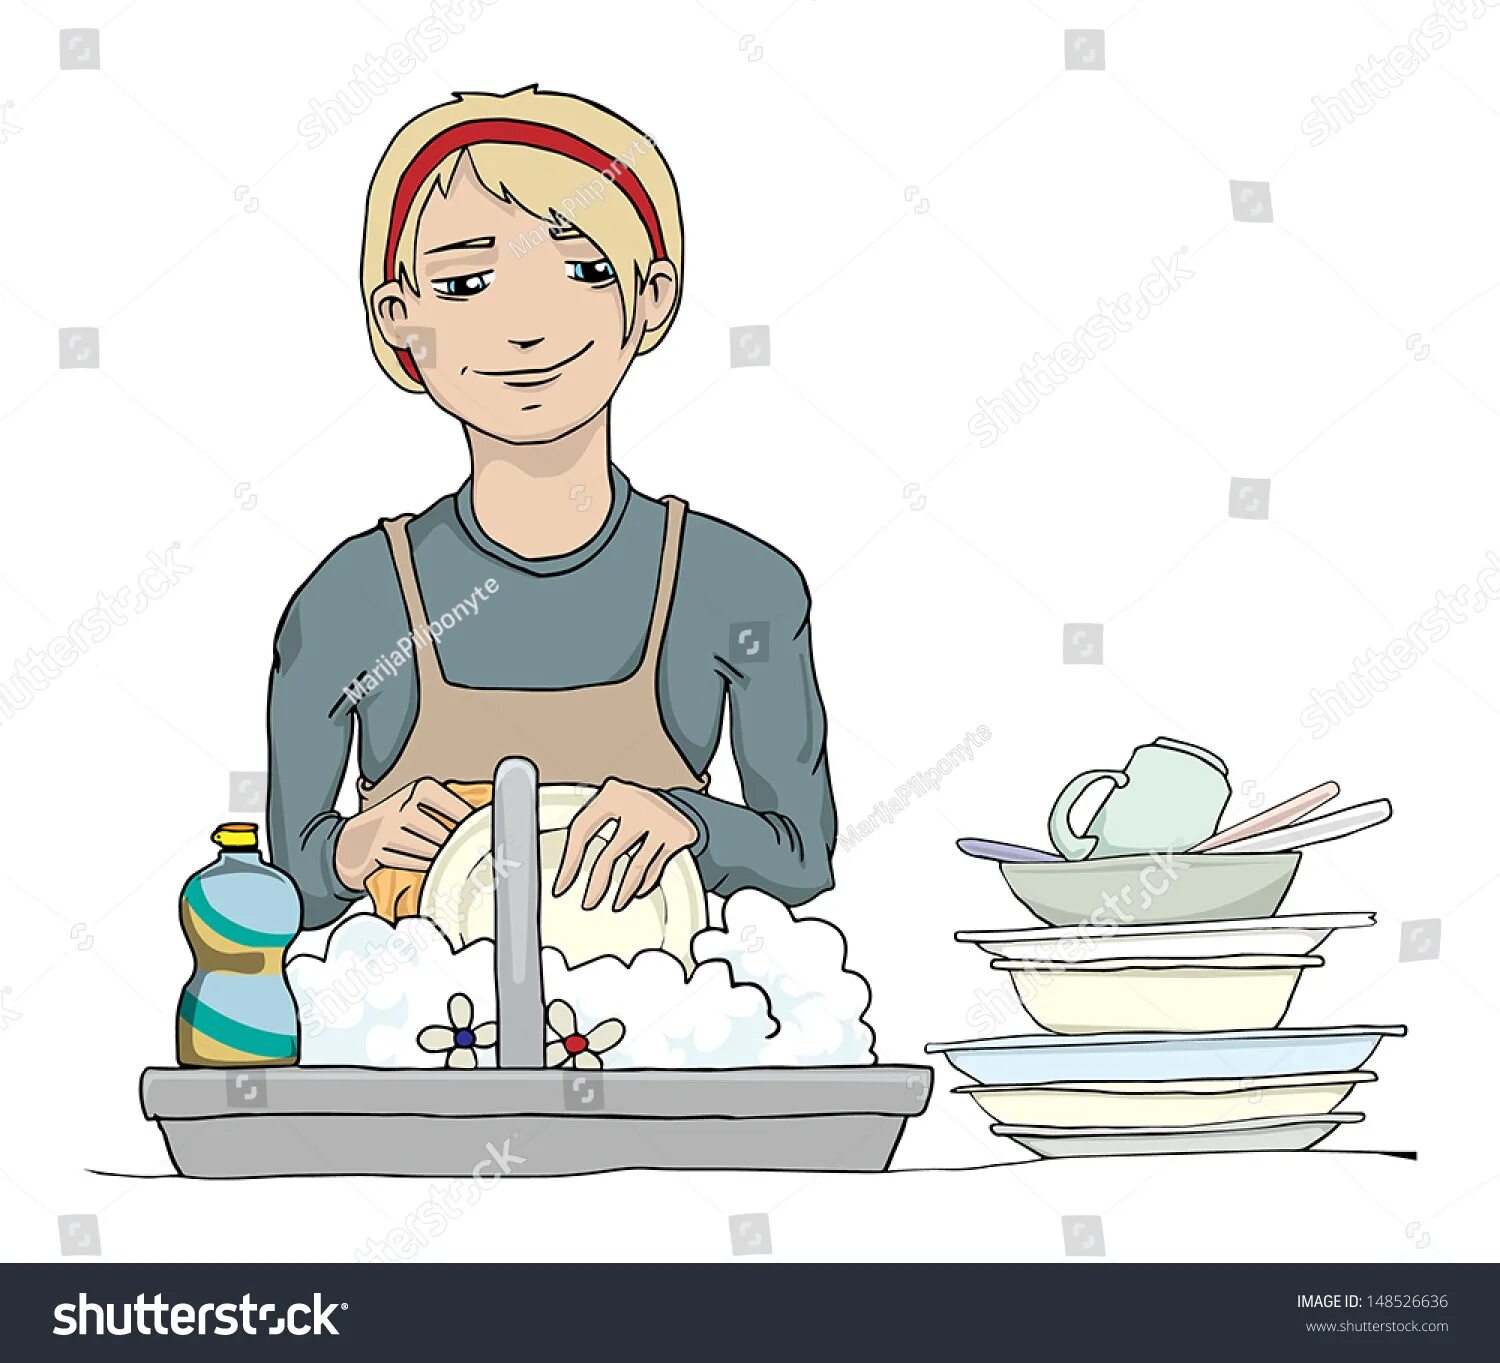 Няня моет посуду. Мытье посуды иллюстрация. Мама моет посуду. Няня моет посуду в детском саду. Женщина моющая посуду.